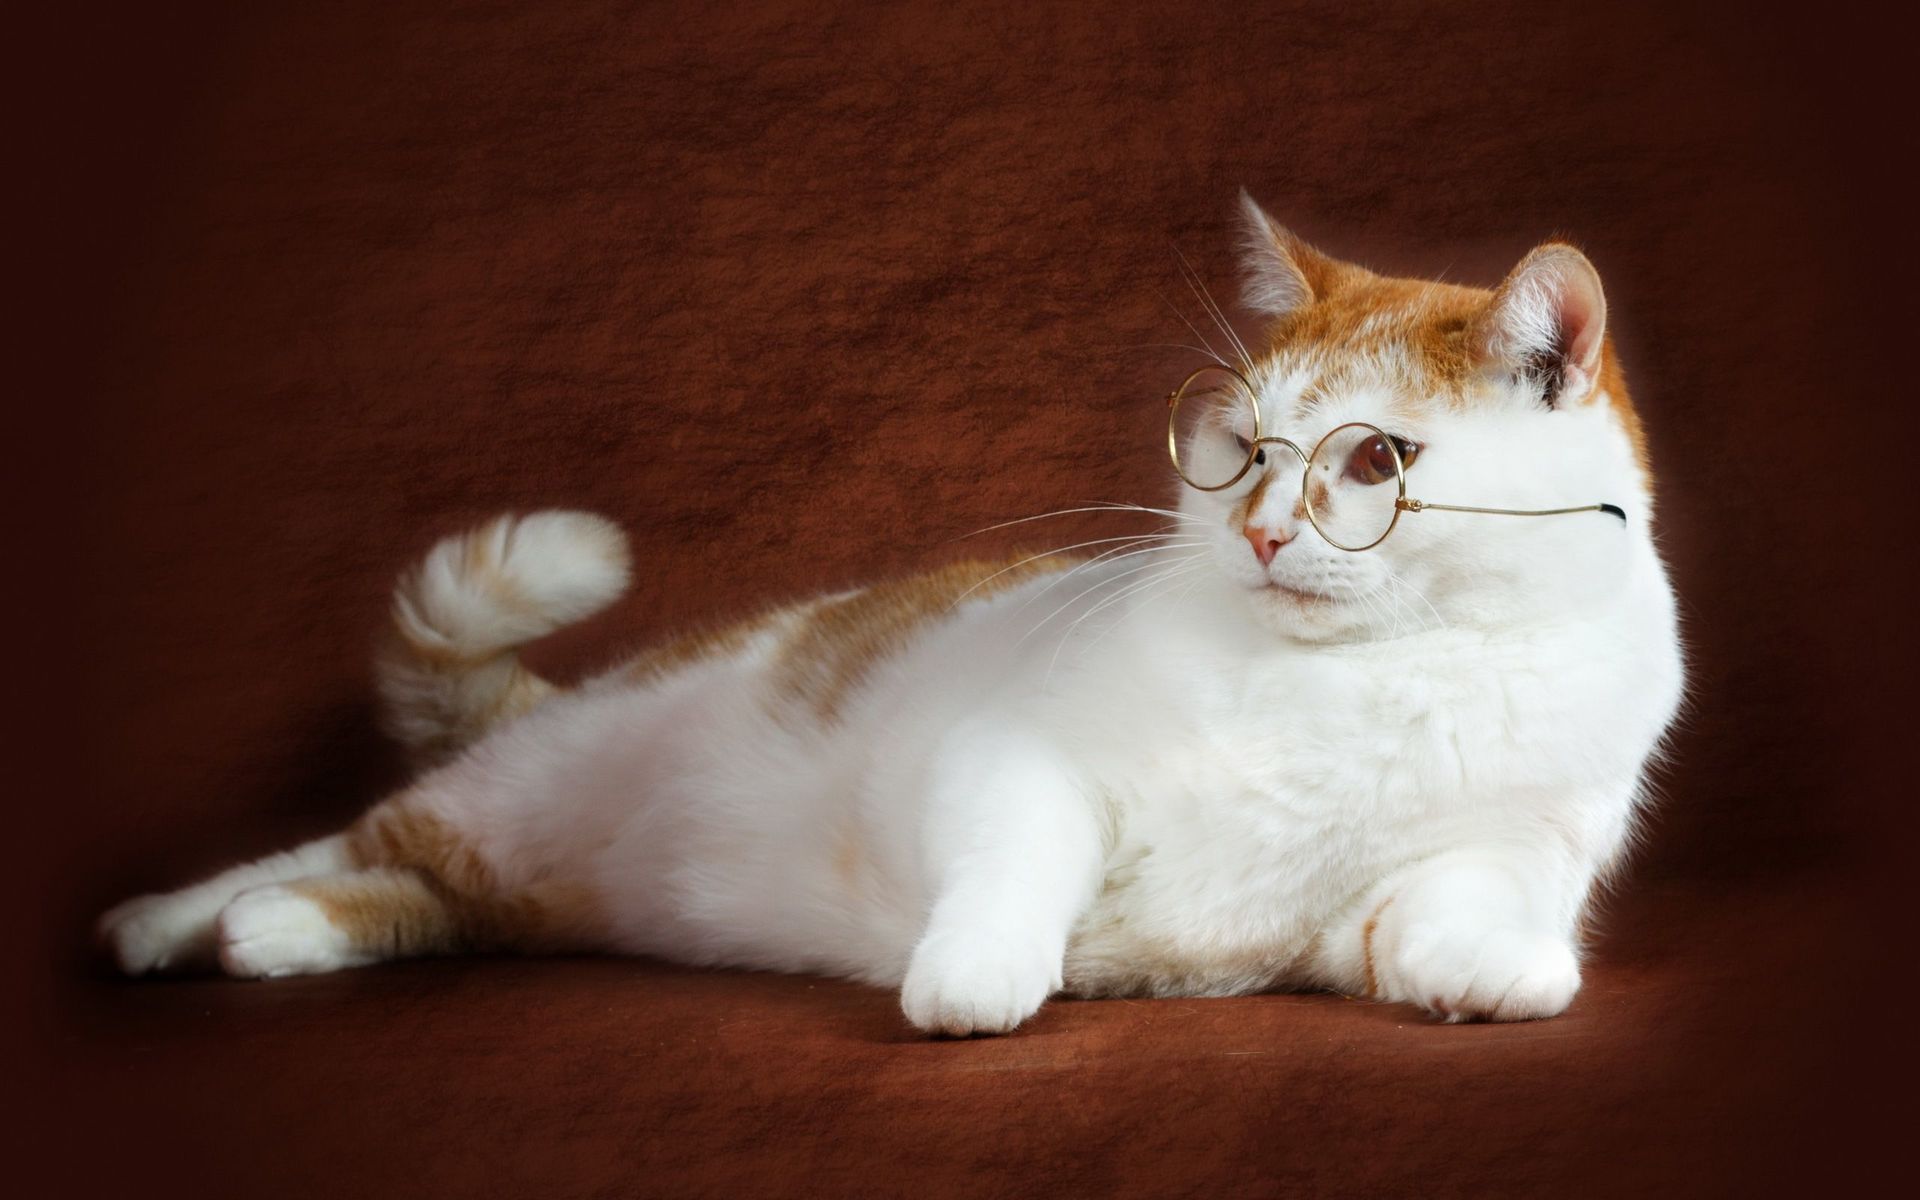 kitten-with-glasses-animal-hd-wallpaper-1920x1200-34745.jpg